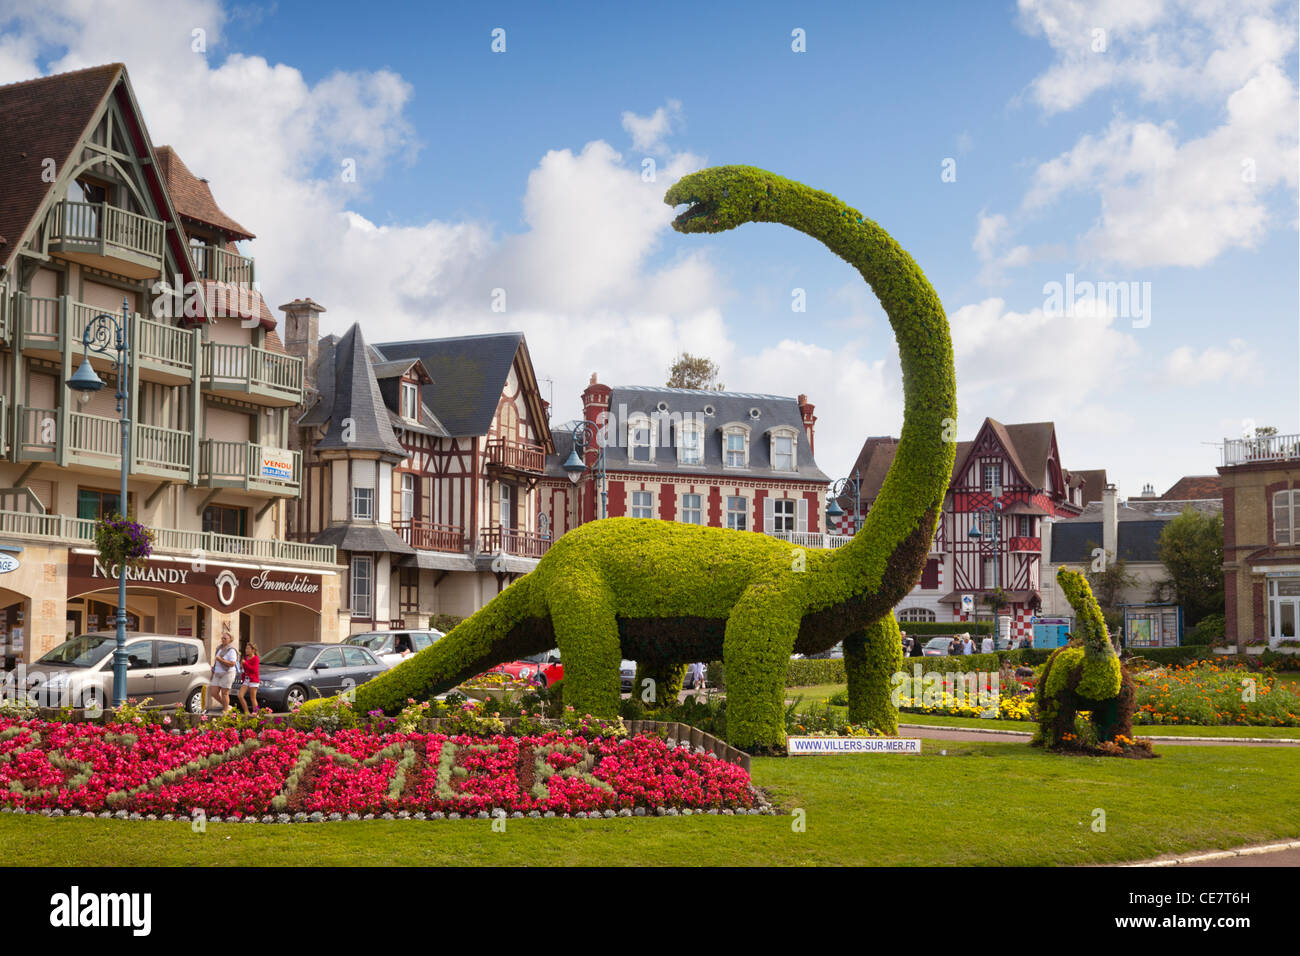 Topiary dinosaure dans le centre de la ville balnéaire de Villers-sur-Mer, Normandie, France. Banque D'Images